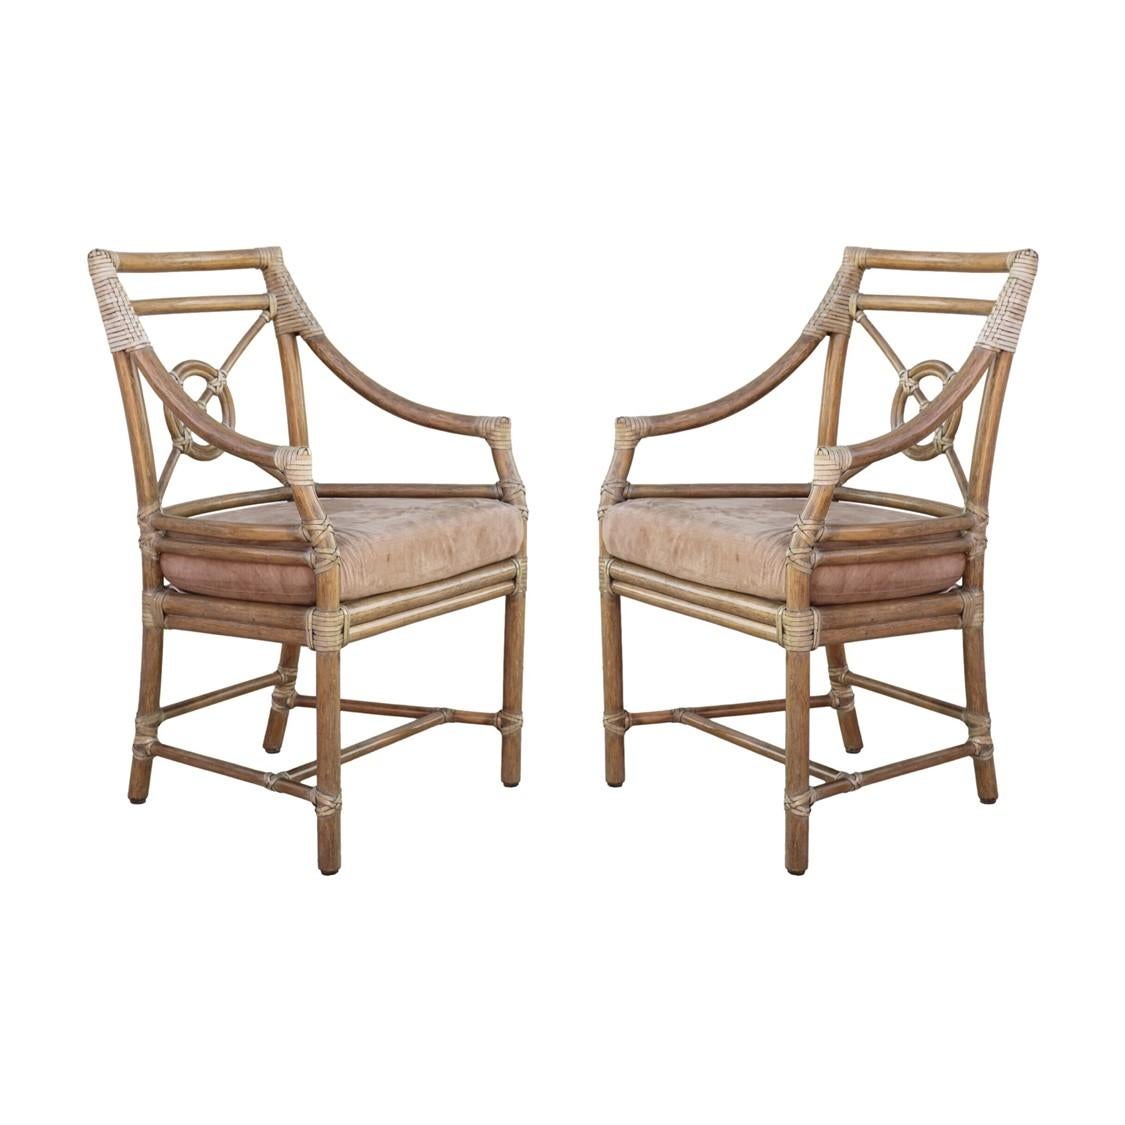 Paire de fauteuils ou de chaises de salle à manger en rotin conçus par l'innovatrice Elinor McGuire dans le style moderne organique californien. Ces chaises impeccablement fabriquées présentent un dossier ouvert en rotin, qui encadre le design